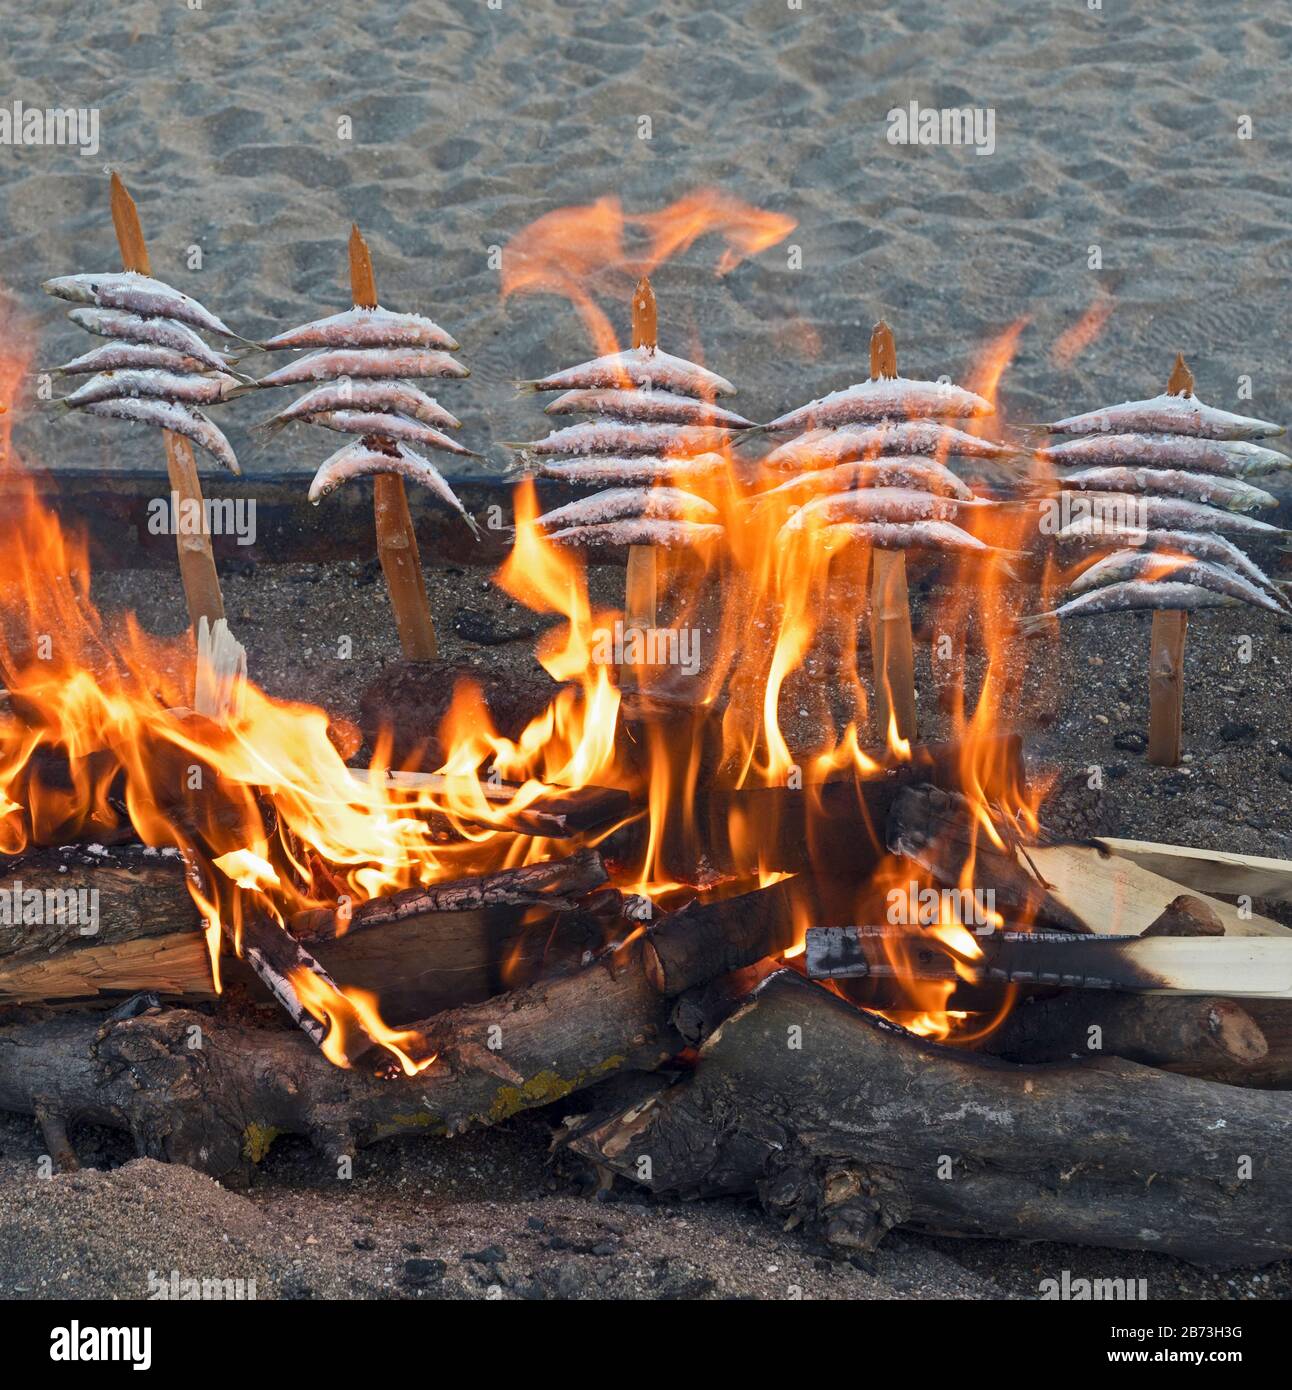 Brochettes, ou espetos, de sardines grillées sur un feu ouvert. Plat typique de la Méditerranée espagnole. Banque D'Images